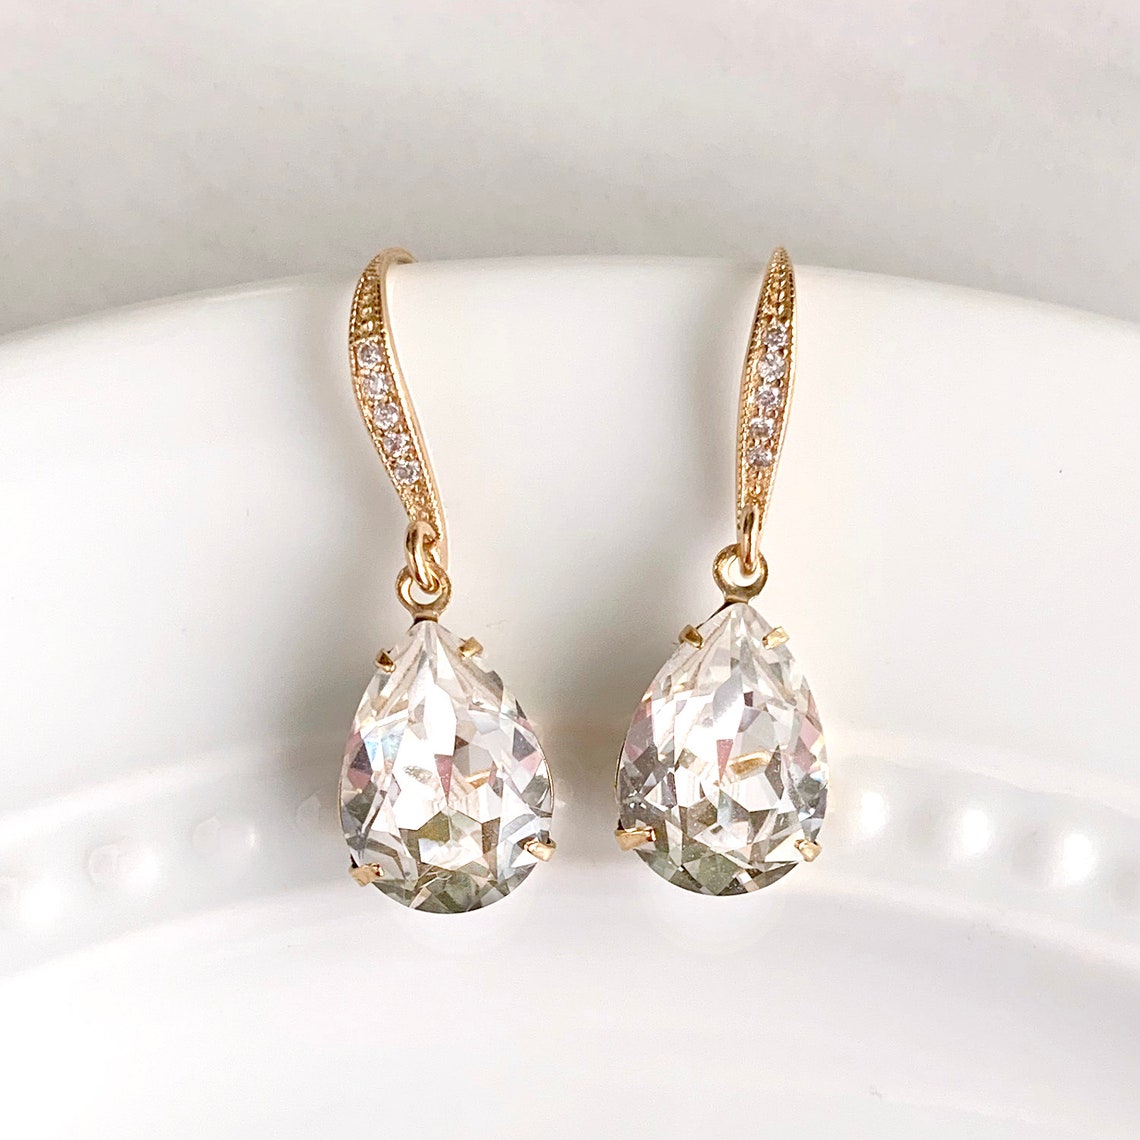 Teardrop bridal earrings wedding earrings crystal | Etsy